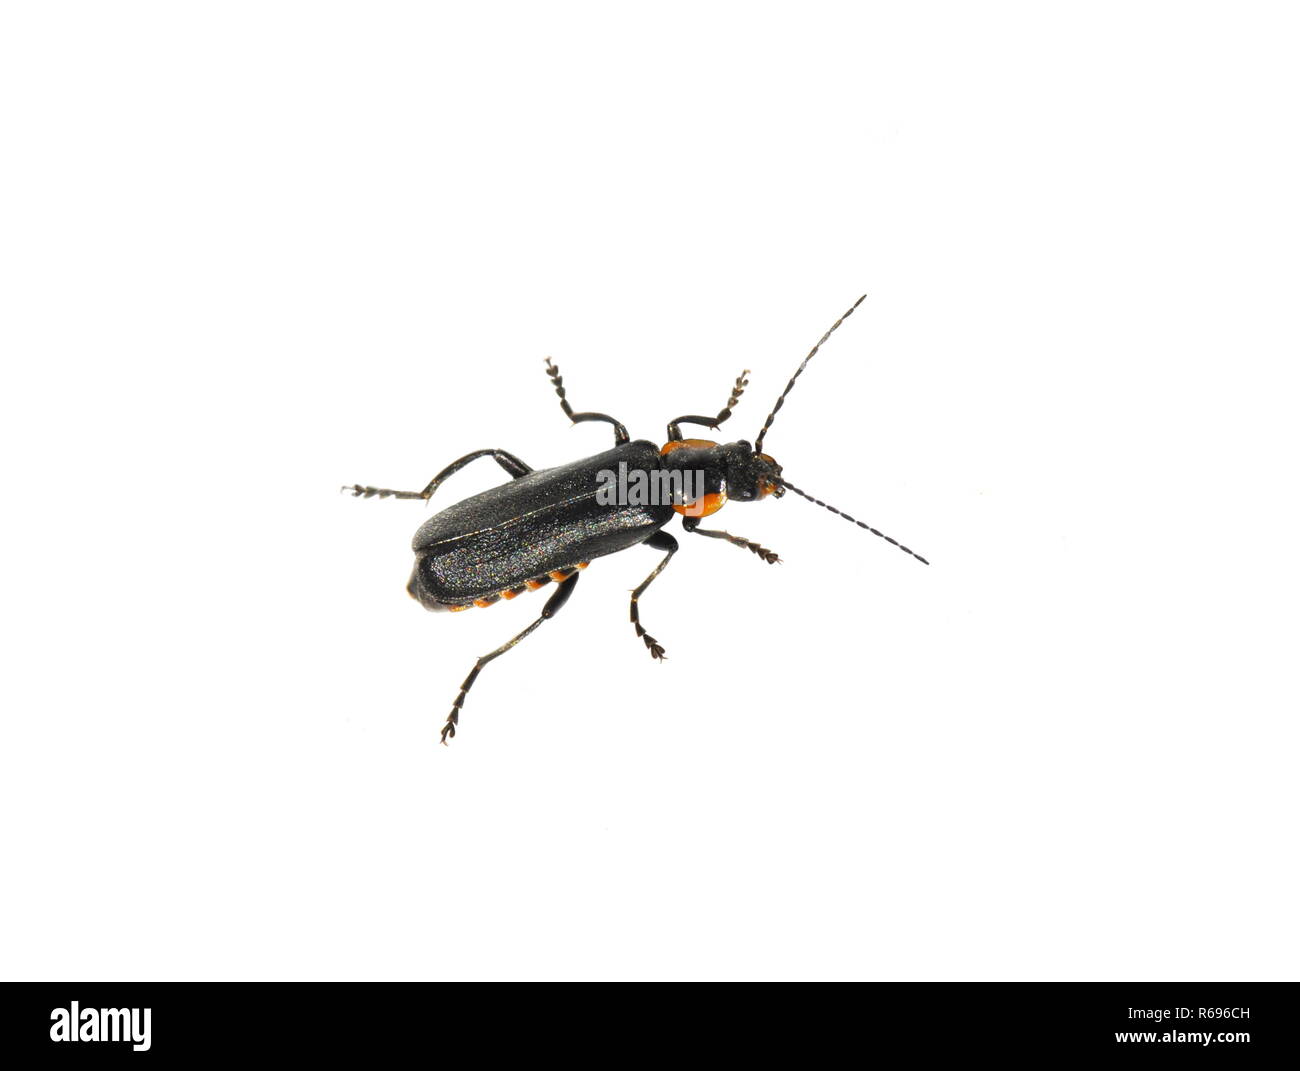 Le soldat beetle Cantharis obscura sur fond blanc Banque D'Images